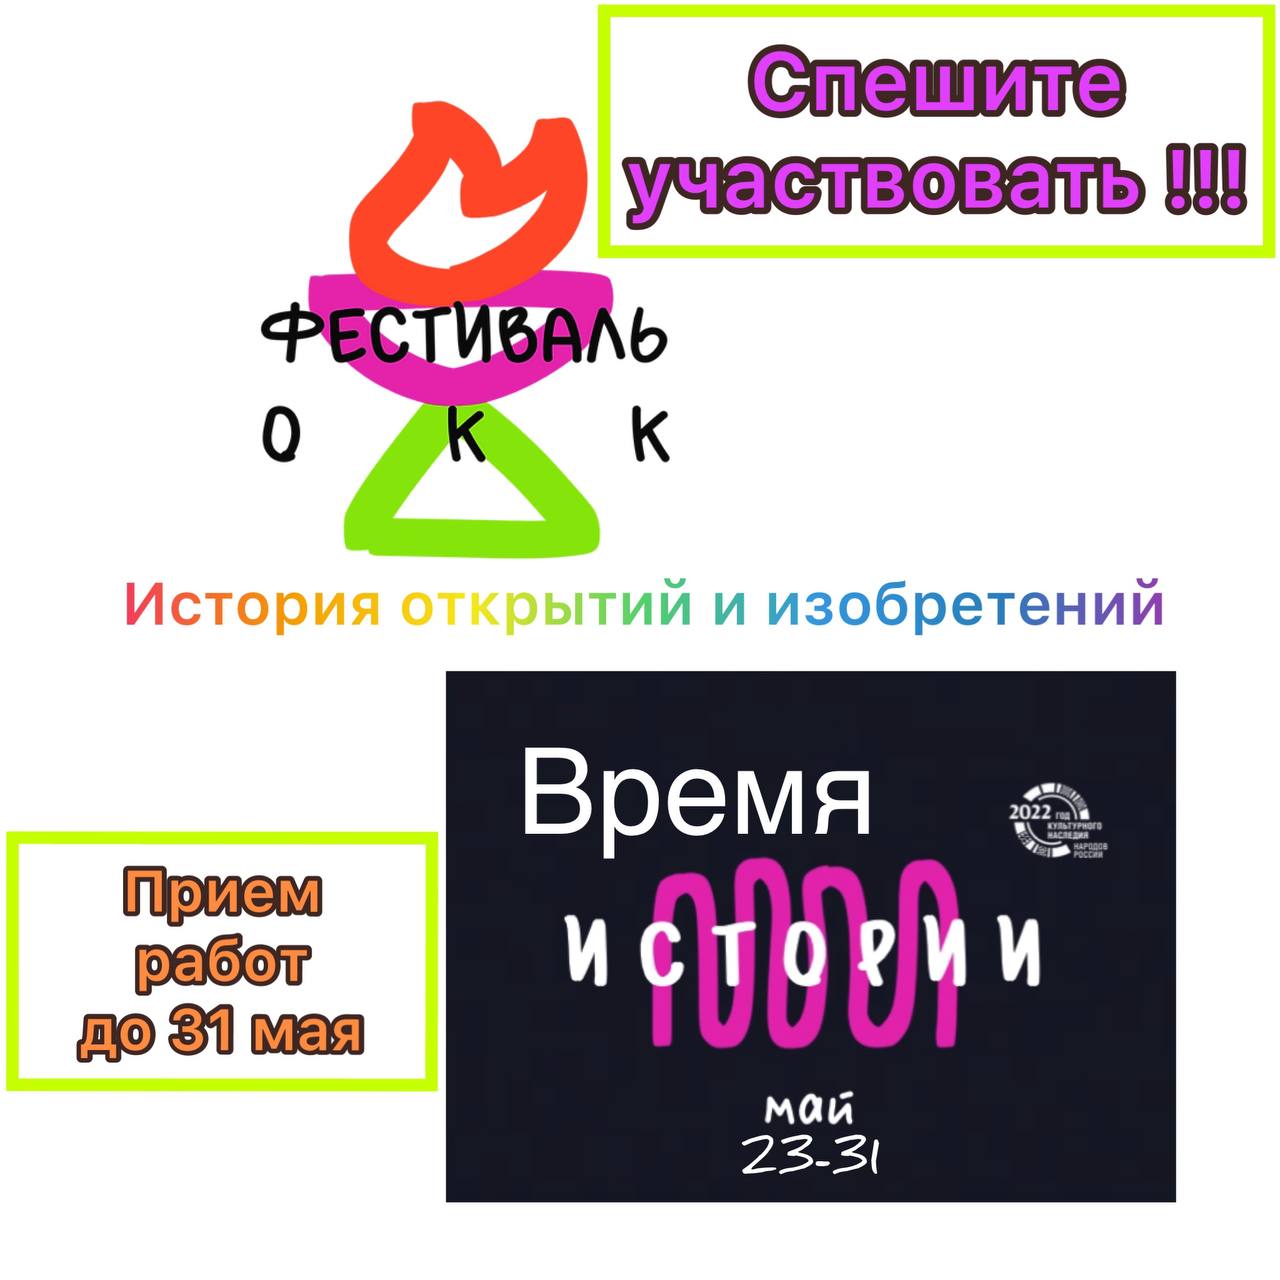 Внимание! Спешите принять участие во Всероссийском фестивале общекультурных компетенций